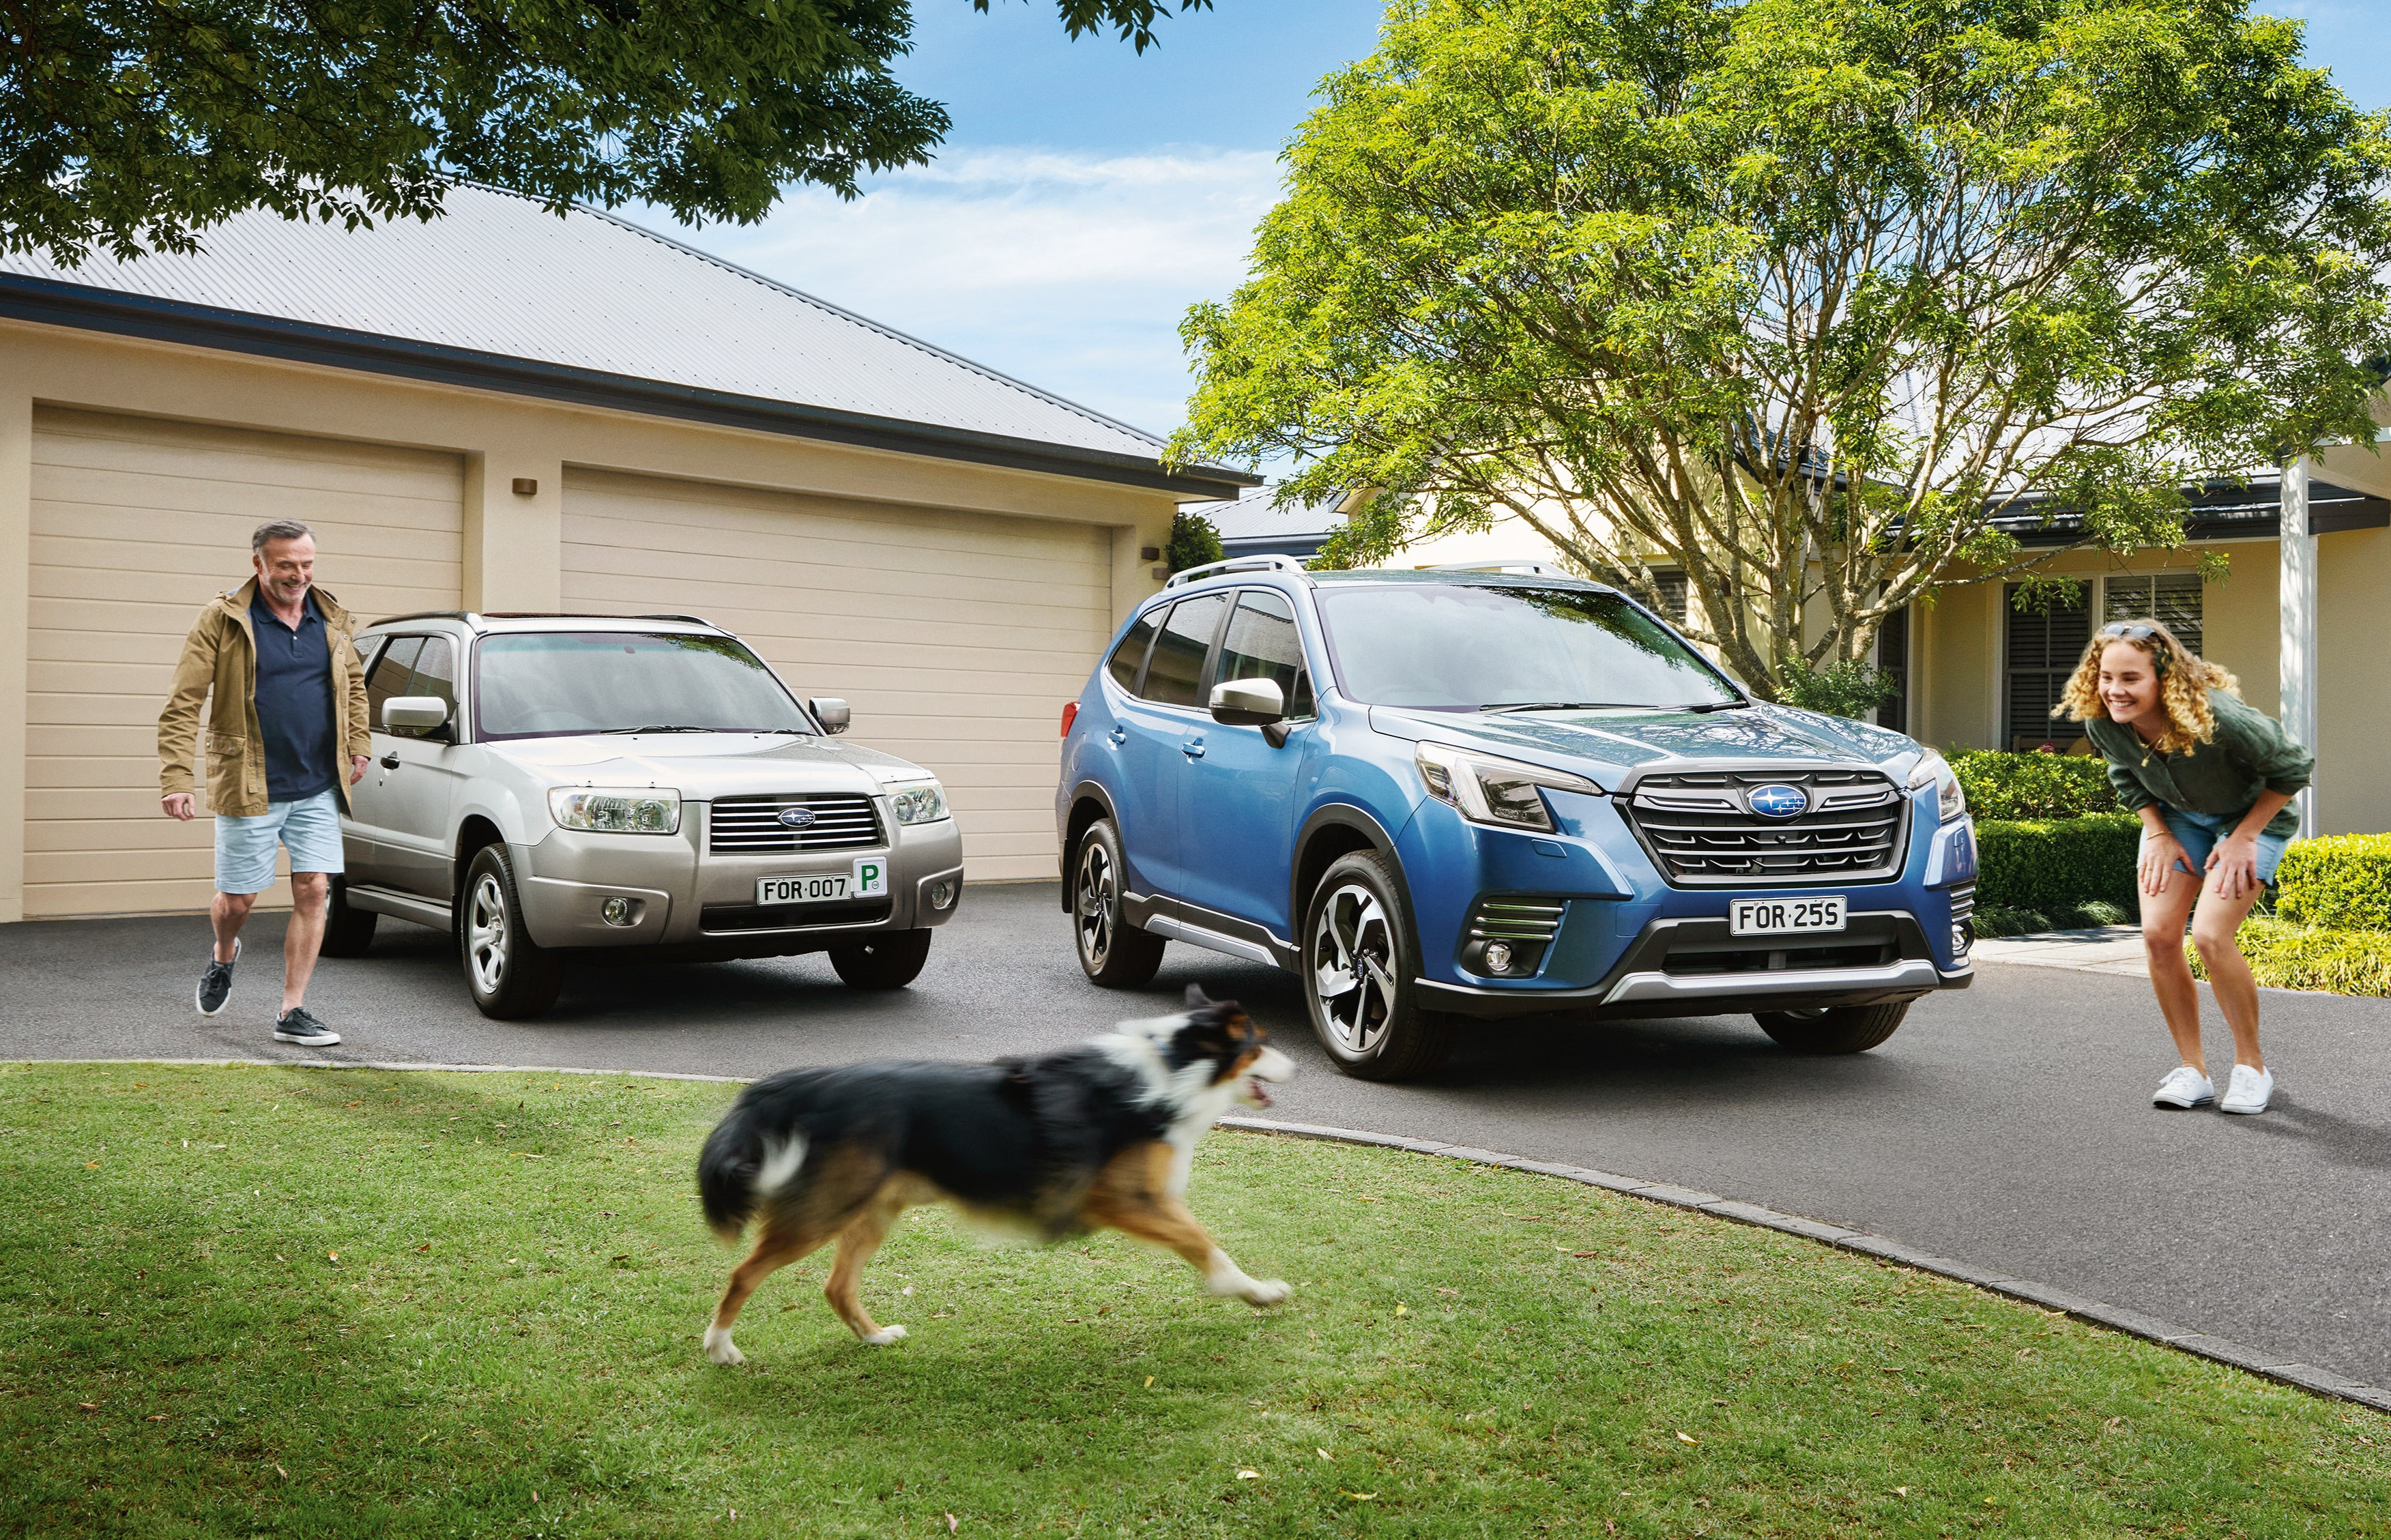 Subaru Australia celebrates a double milestone: Surpassing 600,000 Subaru SUVs sold down under in the company's 50th year